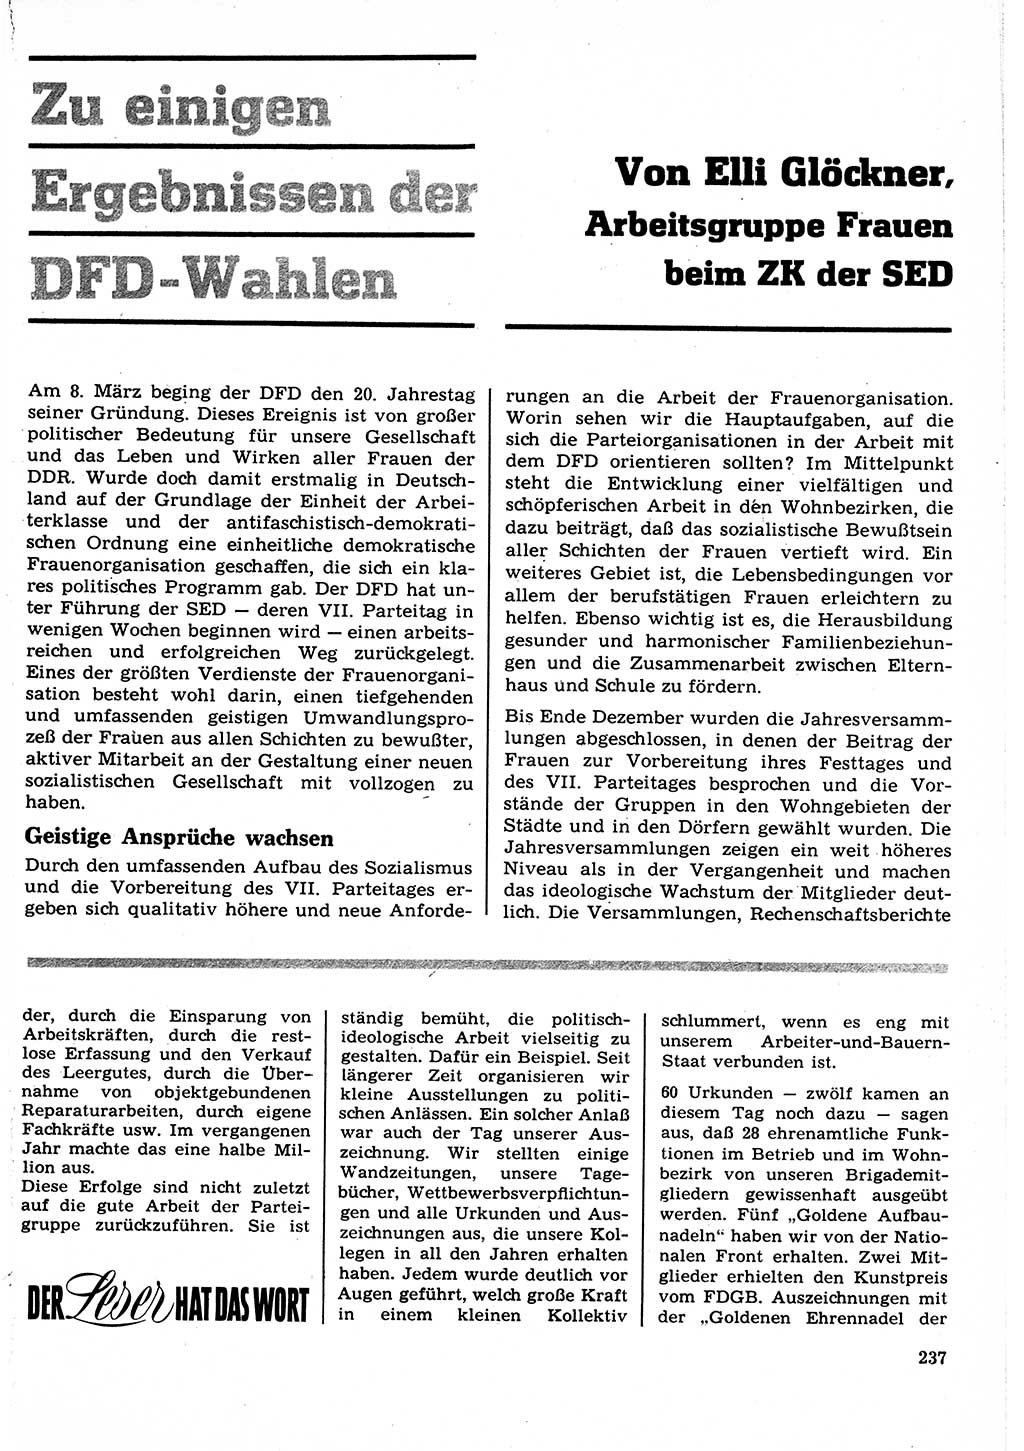 Neuer Weg (NW), Organ des Zentralkomitees (ZK) der SED (Sozialistische Einheitspartei Deutschlands) für Fragen des Parteilebens, 22. Jahrgang [Deutsche Demokratische Republik (DDR)] 1967, Seite 237 (NW ZK SED DDR 1967, S. 237)